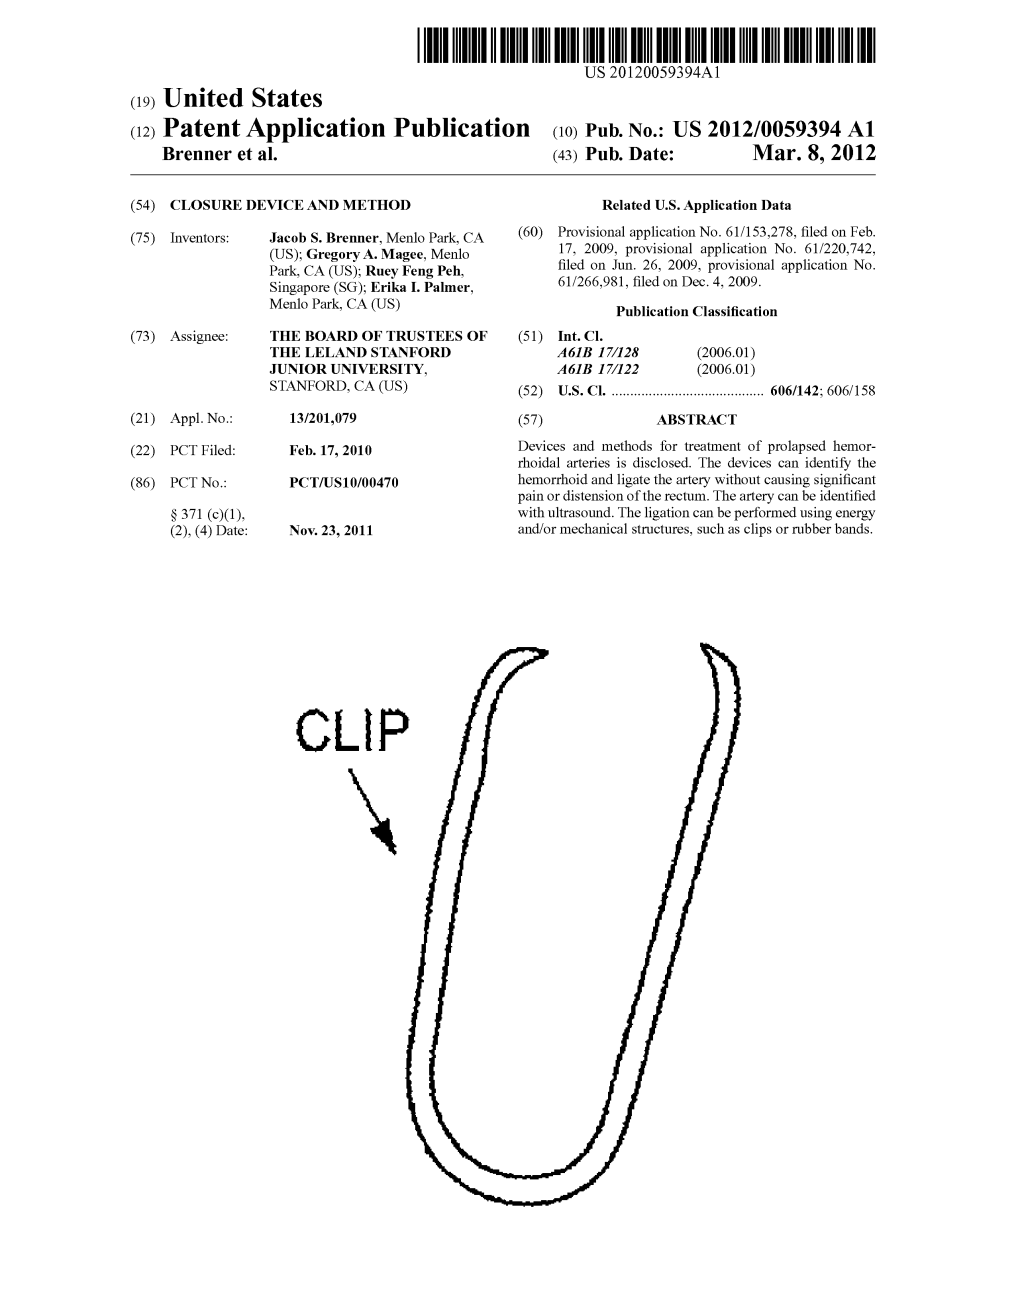 (12) Patent Application Publication (10) Pub. No.: US 2012/0059394A1 Brenner Et Al